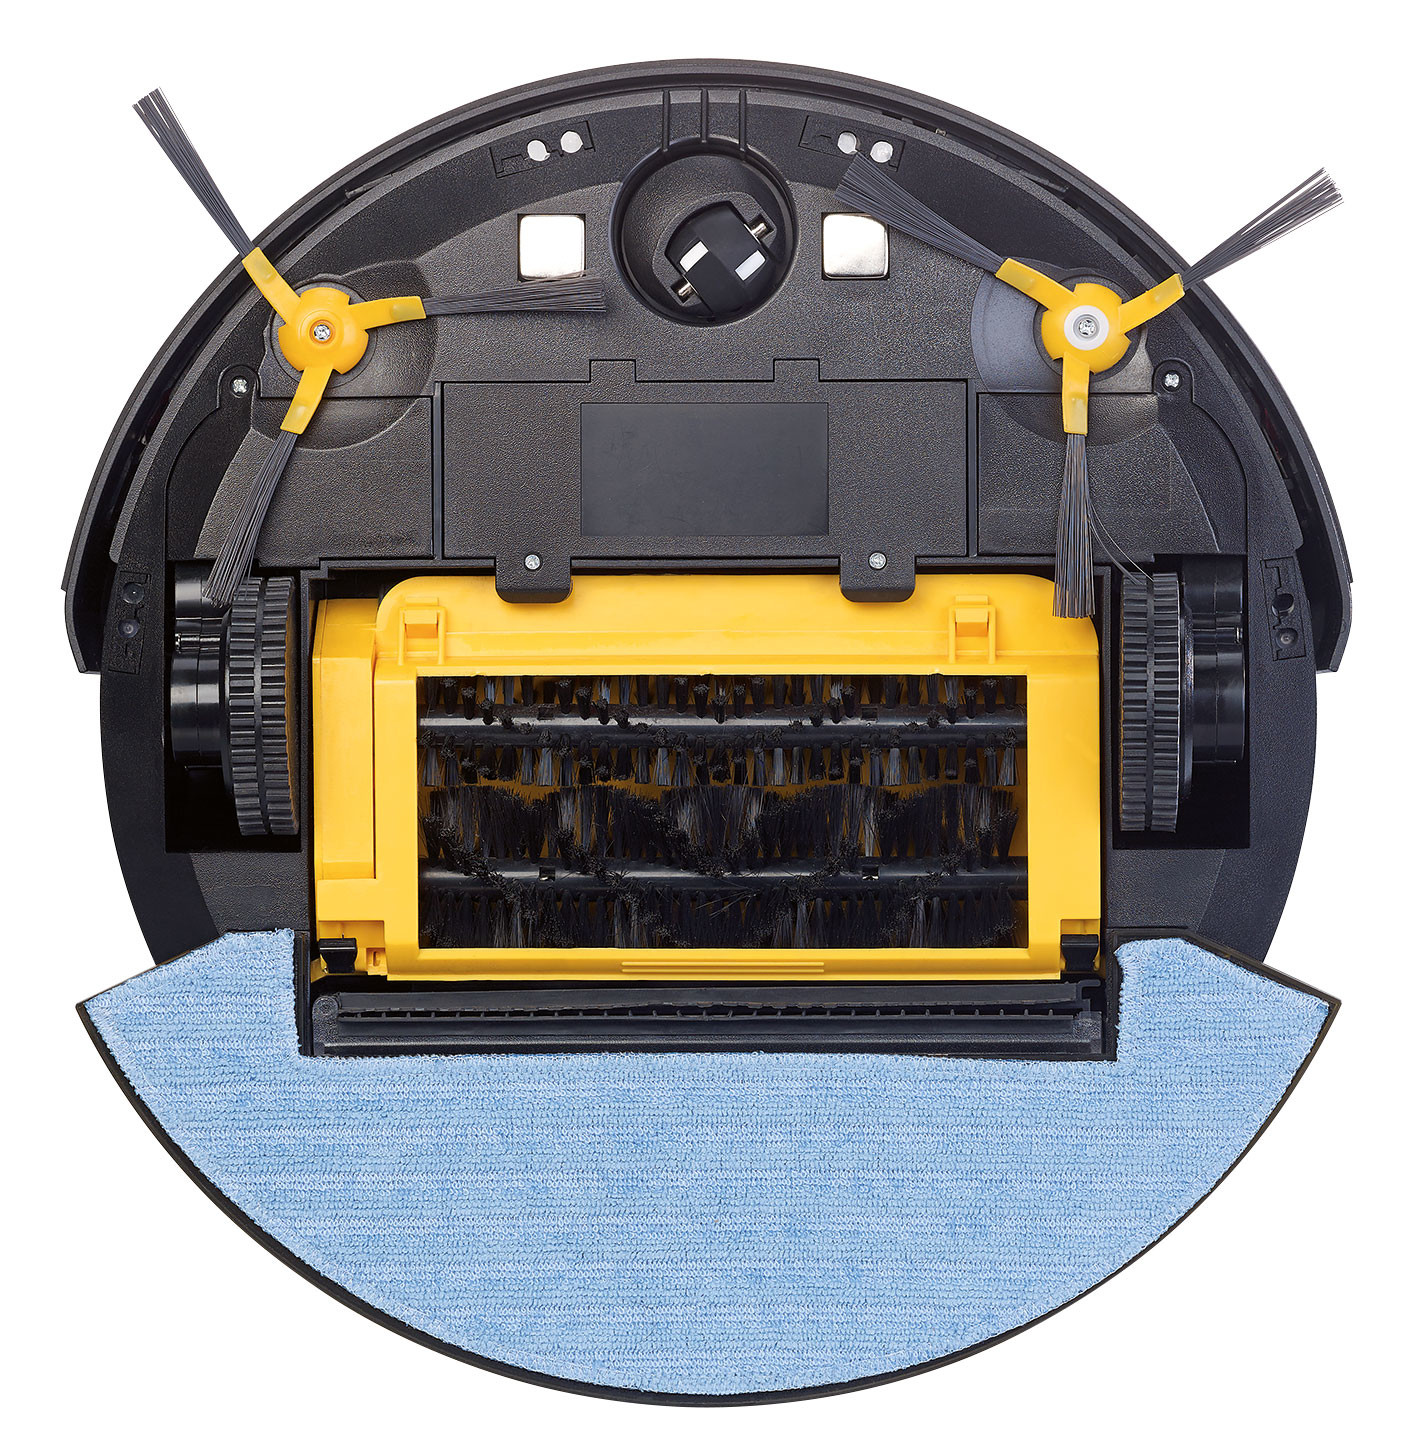 Robot aspirateur laveur pcr-3500 NX3319 - Conforama